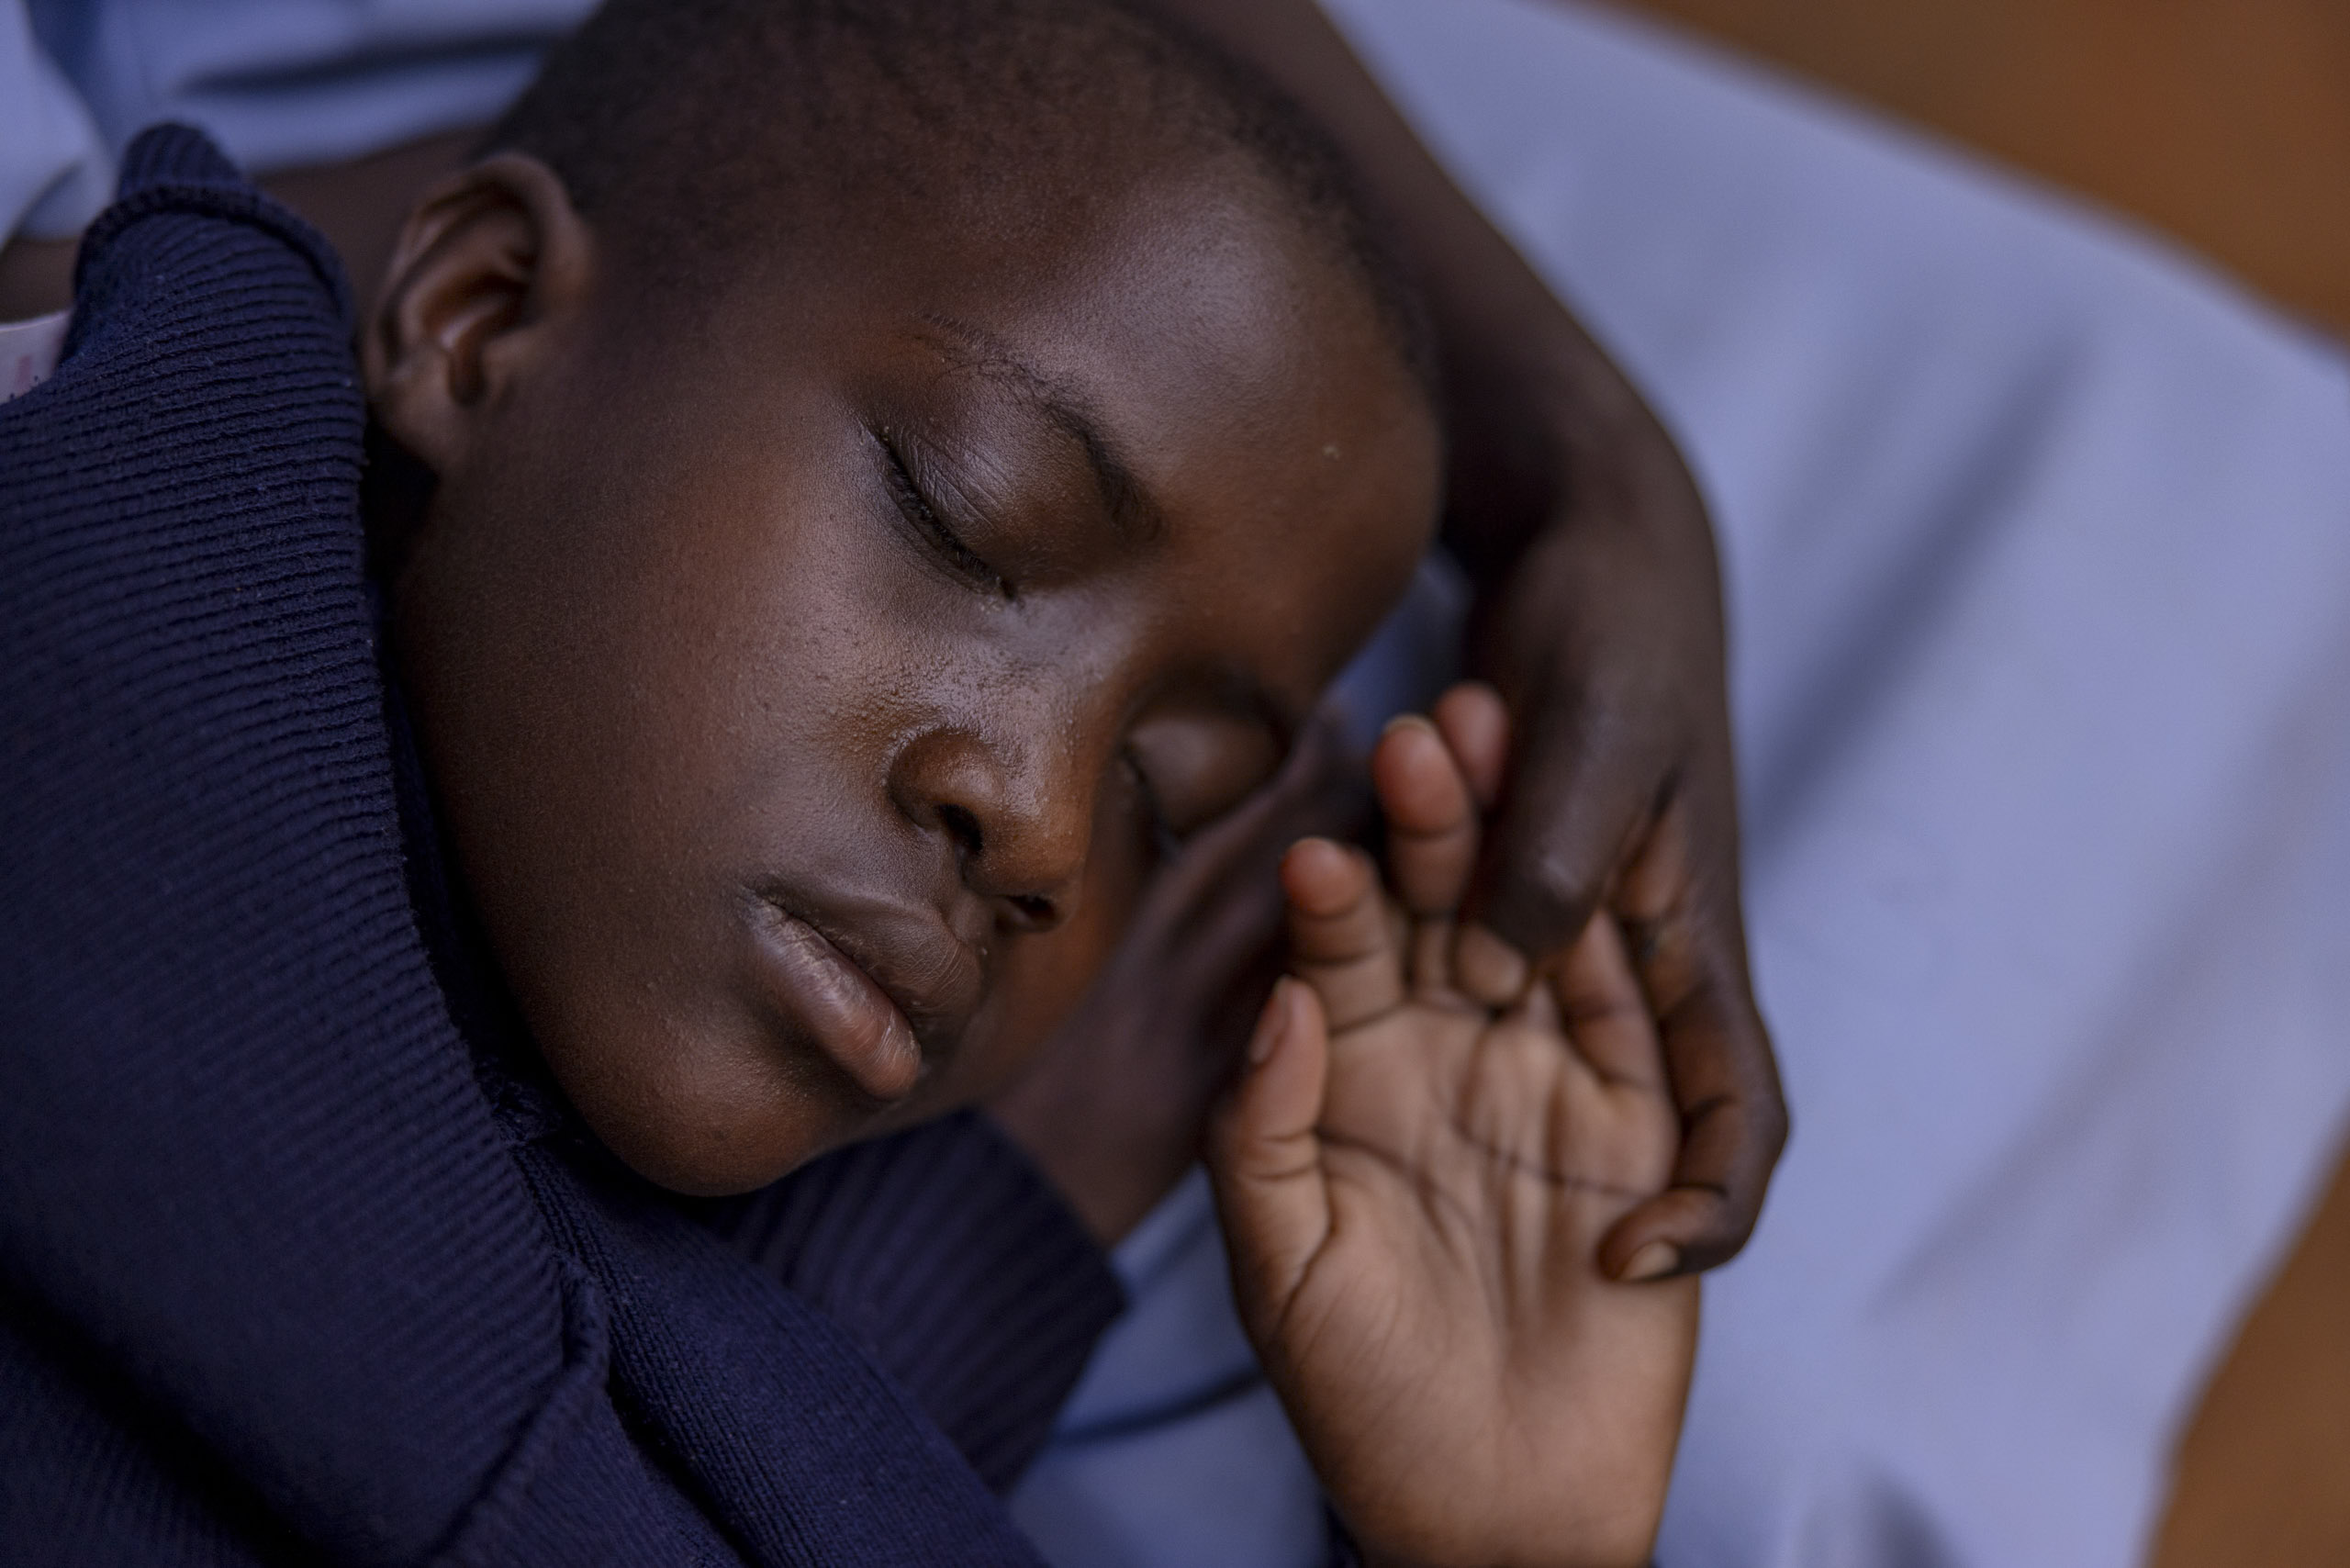 Ein kleiner Junge schläft friedlich auf einer hellen Decke und trägt einen dunklen Pullover. Sein Kopf ruht sanft auf seinen Armen und zeigt einen heiteren Gesichtsausdruck. © Fotografie Tomas Rodriguez